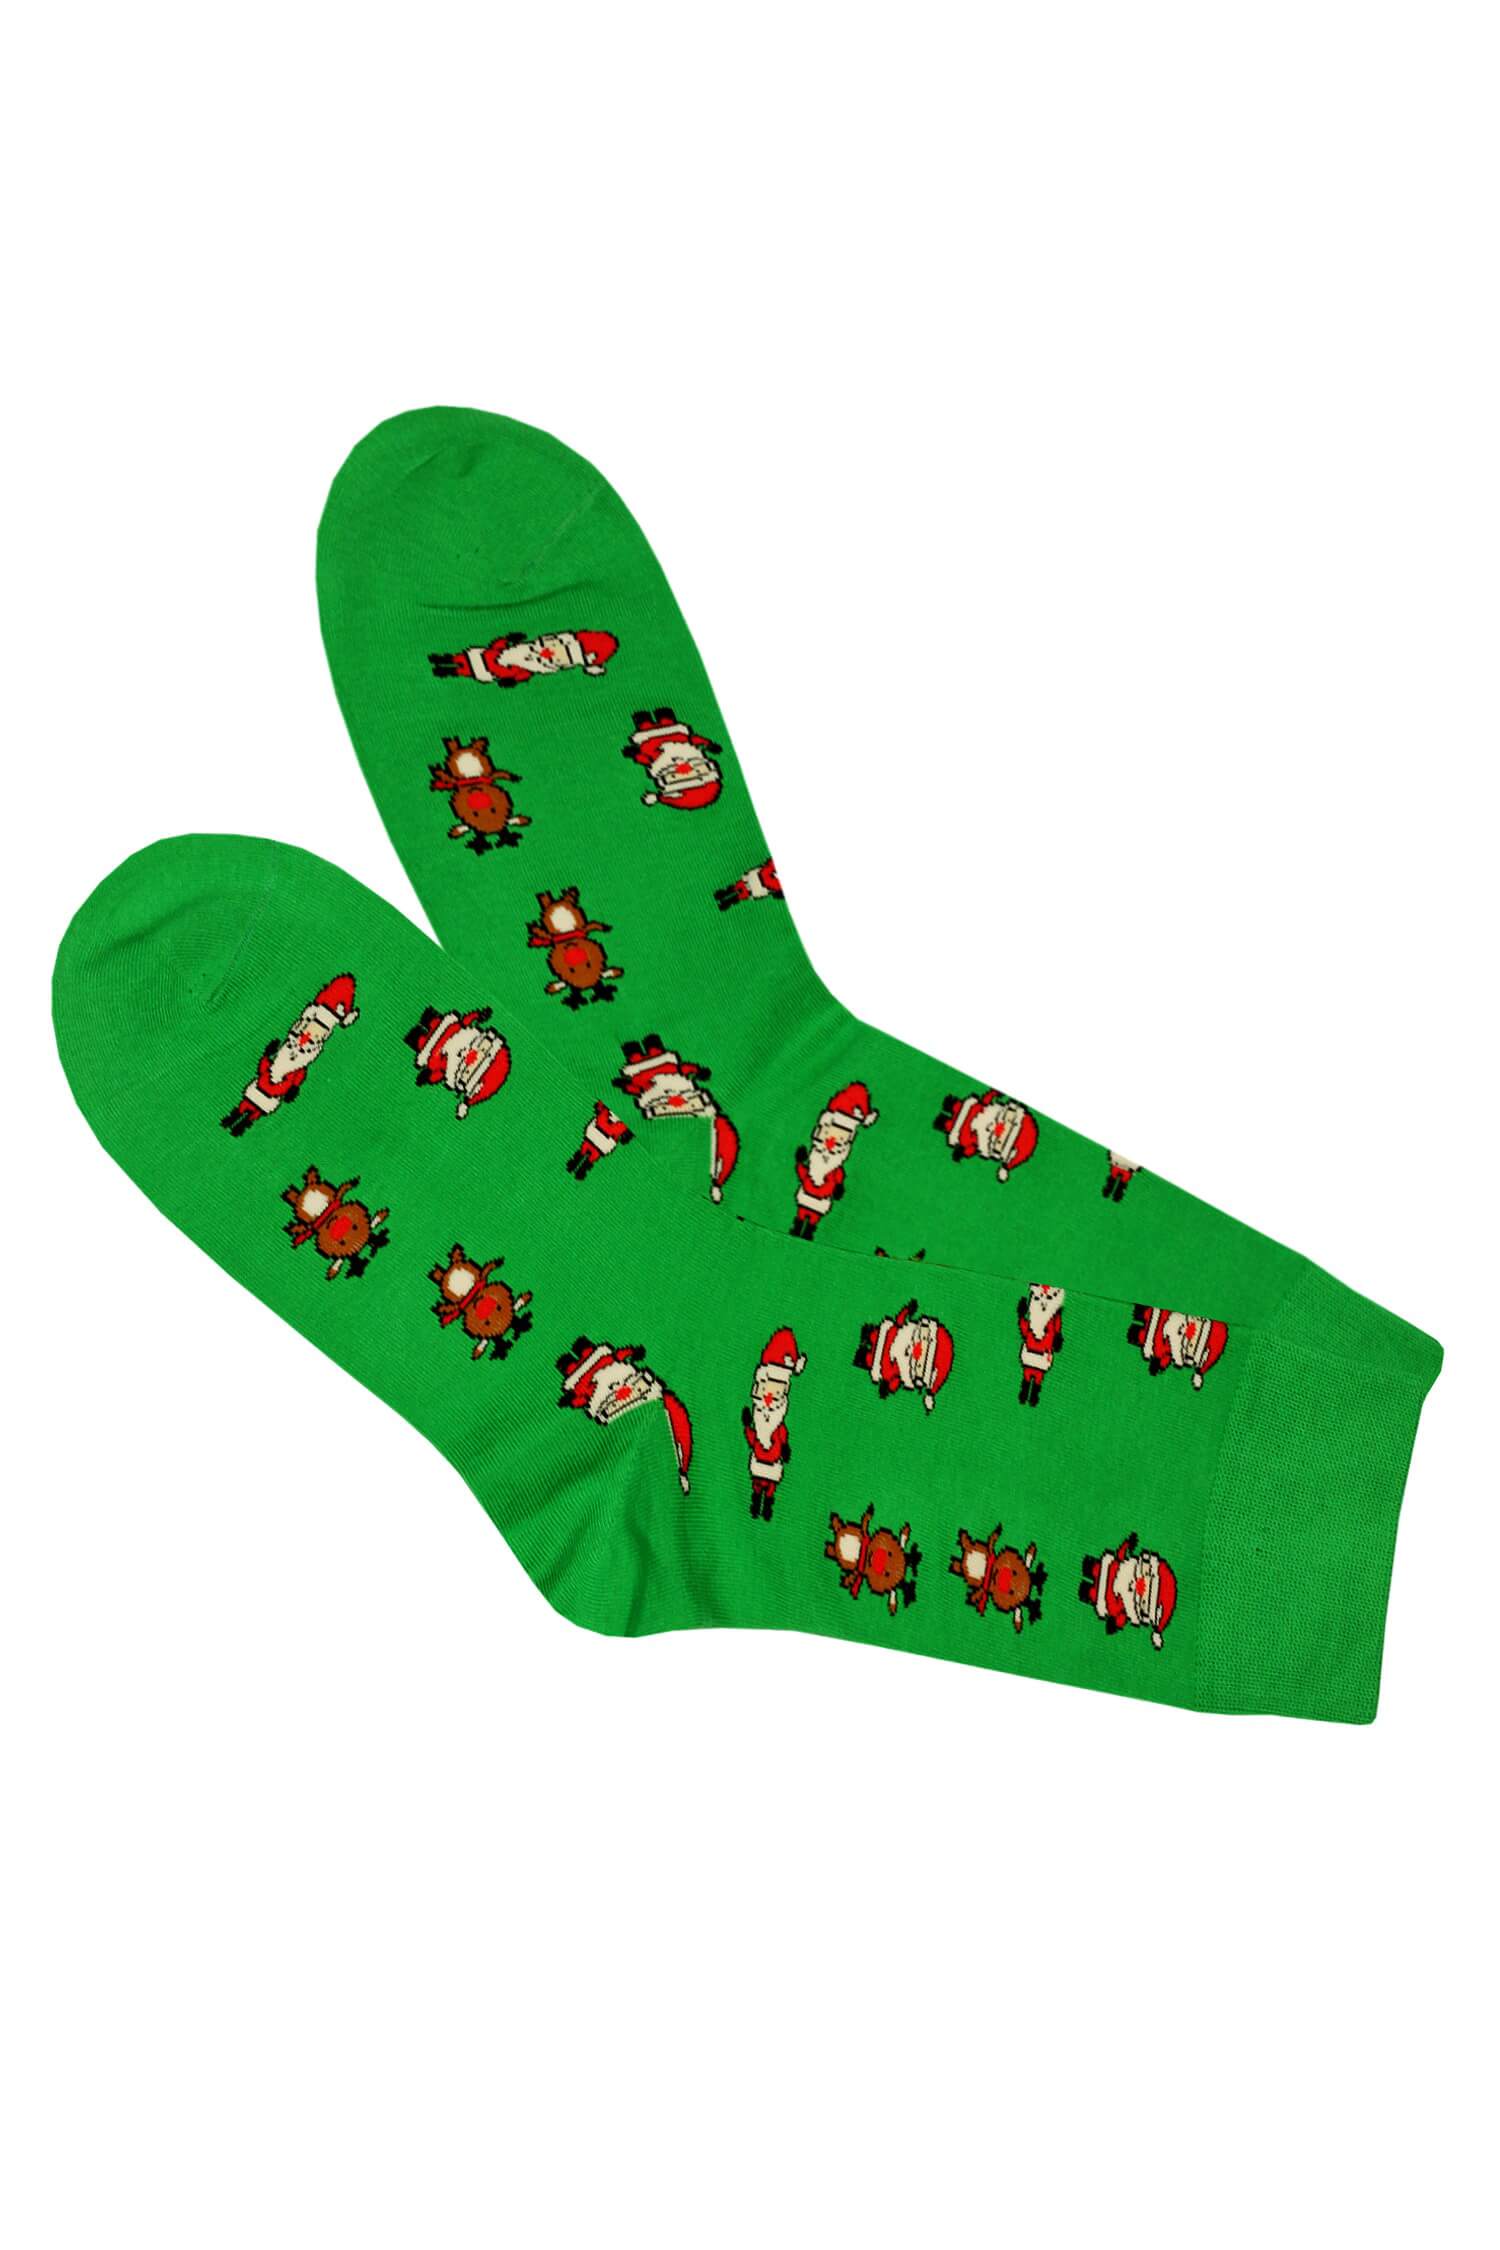 Pánské veselé ponožky AuraVia Vánoční 39-42 zelená